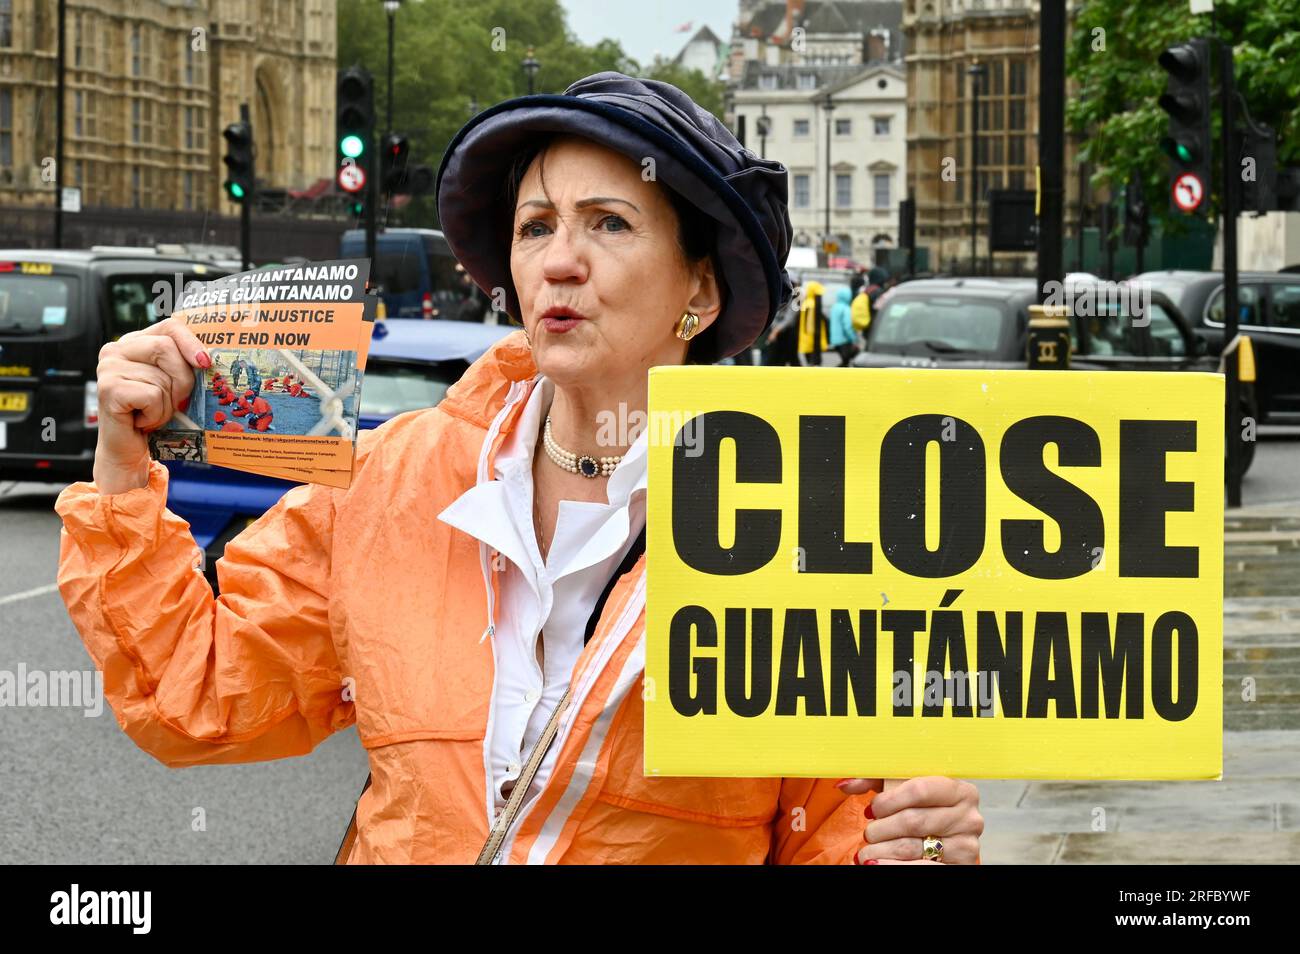 London, Großbritannien. Aktivisten des britischen Guantanamo Network haben sich gegenüber den Parlamentsgebäuden versammelt, um ein Ende von 21 Jahren Ungerechtigkeit und die sofortige Schließung von Guantanamo zu fordern. Kredit: michael melia/Alamy Live News Stockfoto